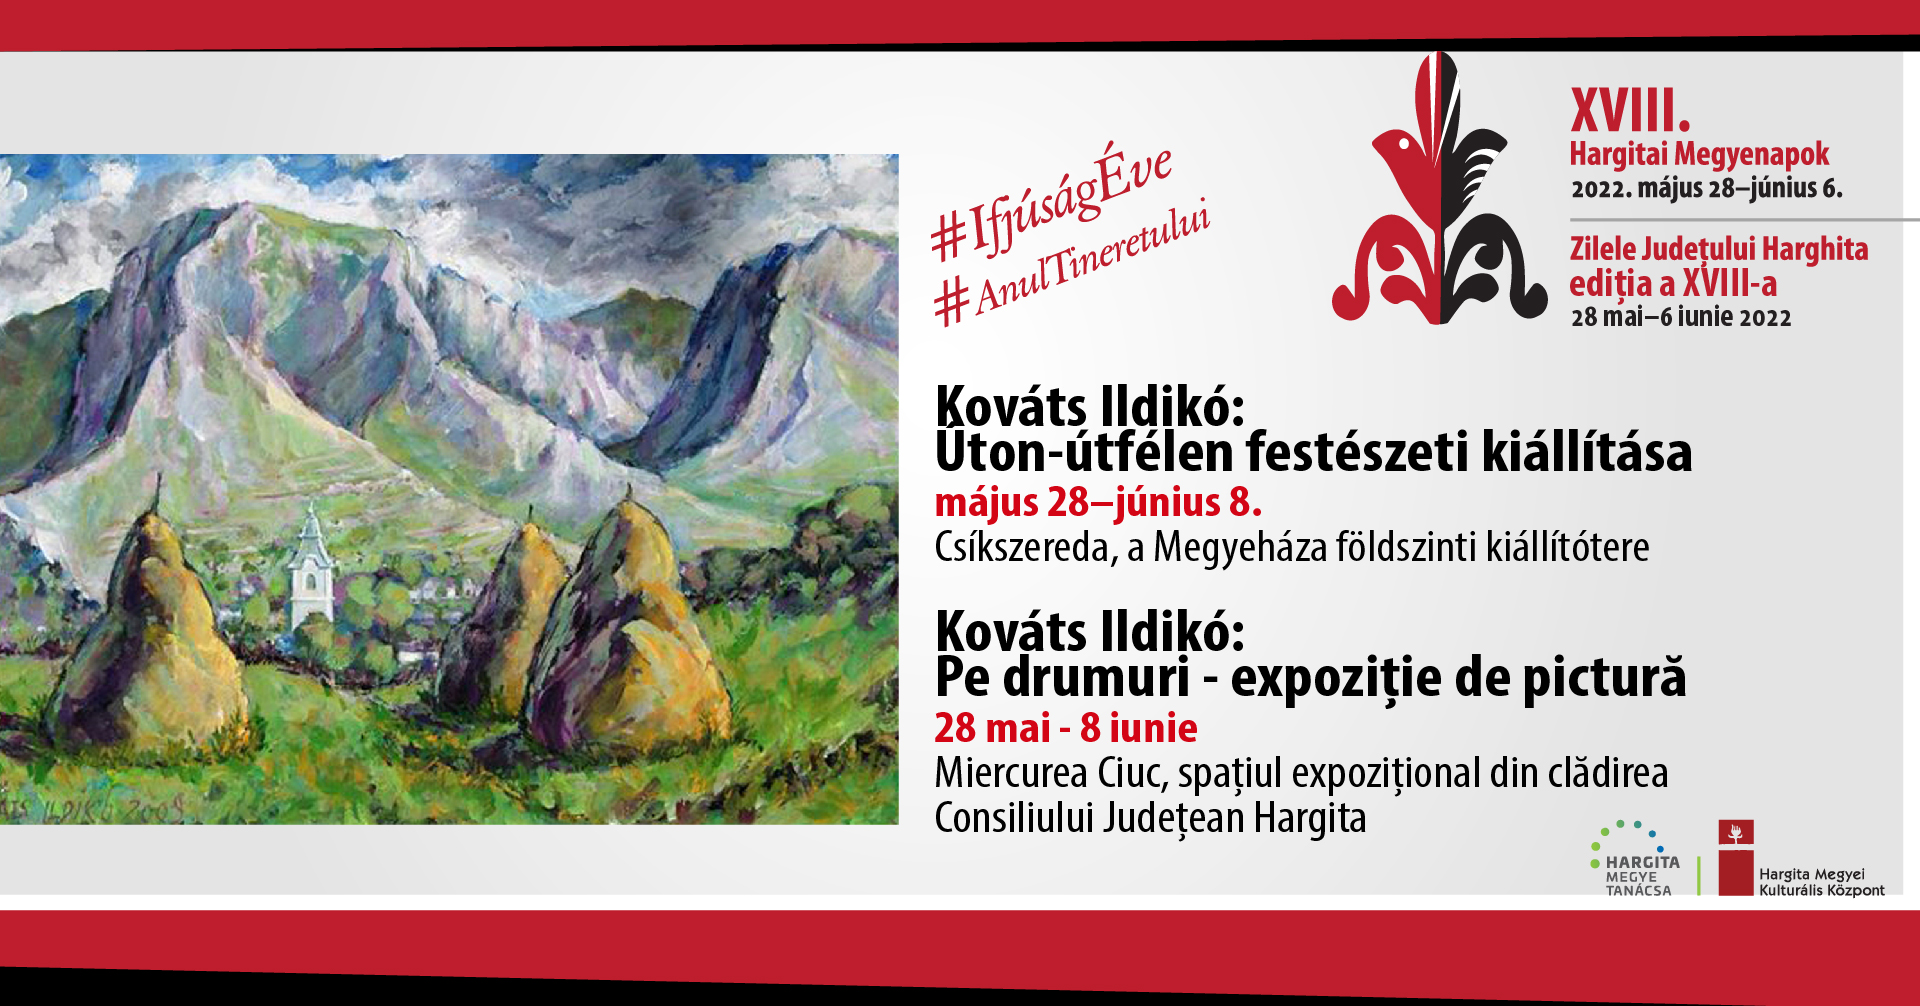 Kováts Ildikó: Pe drumuri expoziție de pictură